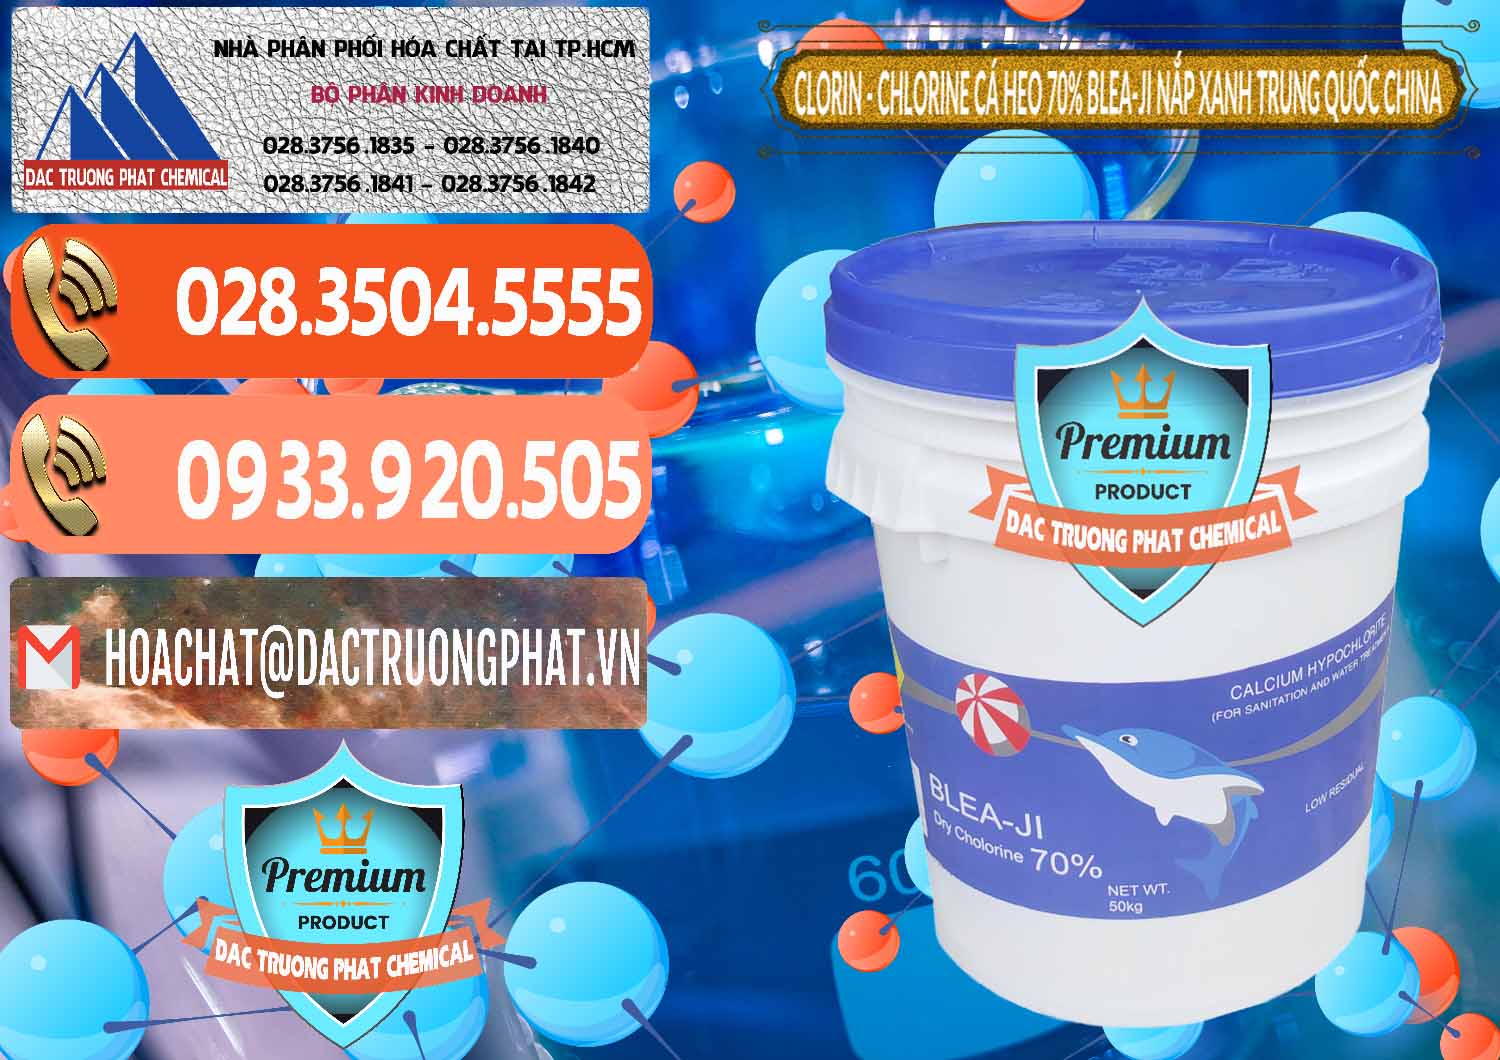 Chuyên cung ứng và bán Clorin - Chlorine Cá Heo 70% Cá Heo Blea-Ji Thùng Tròn Nắp Xanh Trung Quốc China - 0208 - Nơi phân phối - cung cấp hóa chất tại TP.HCM - hoachatmientay.com